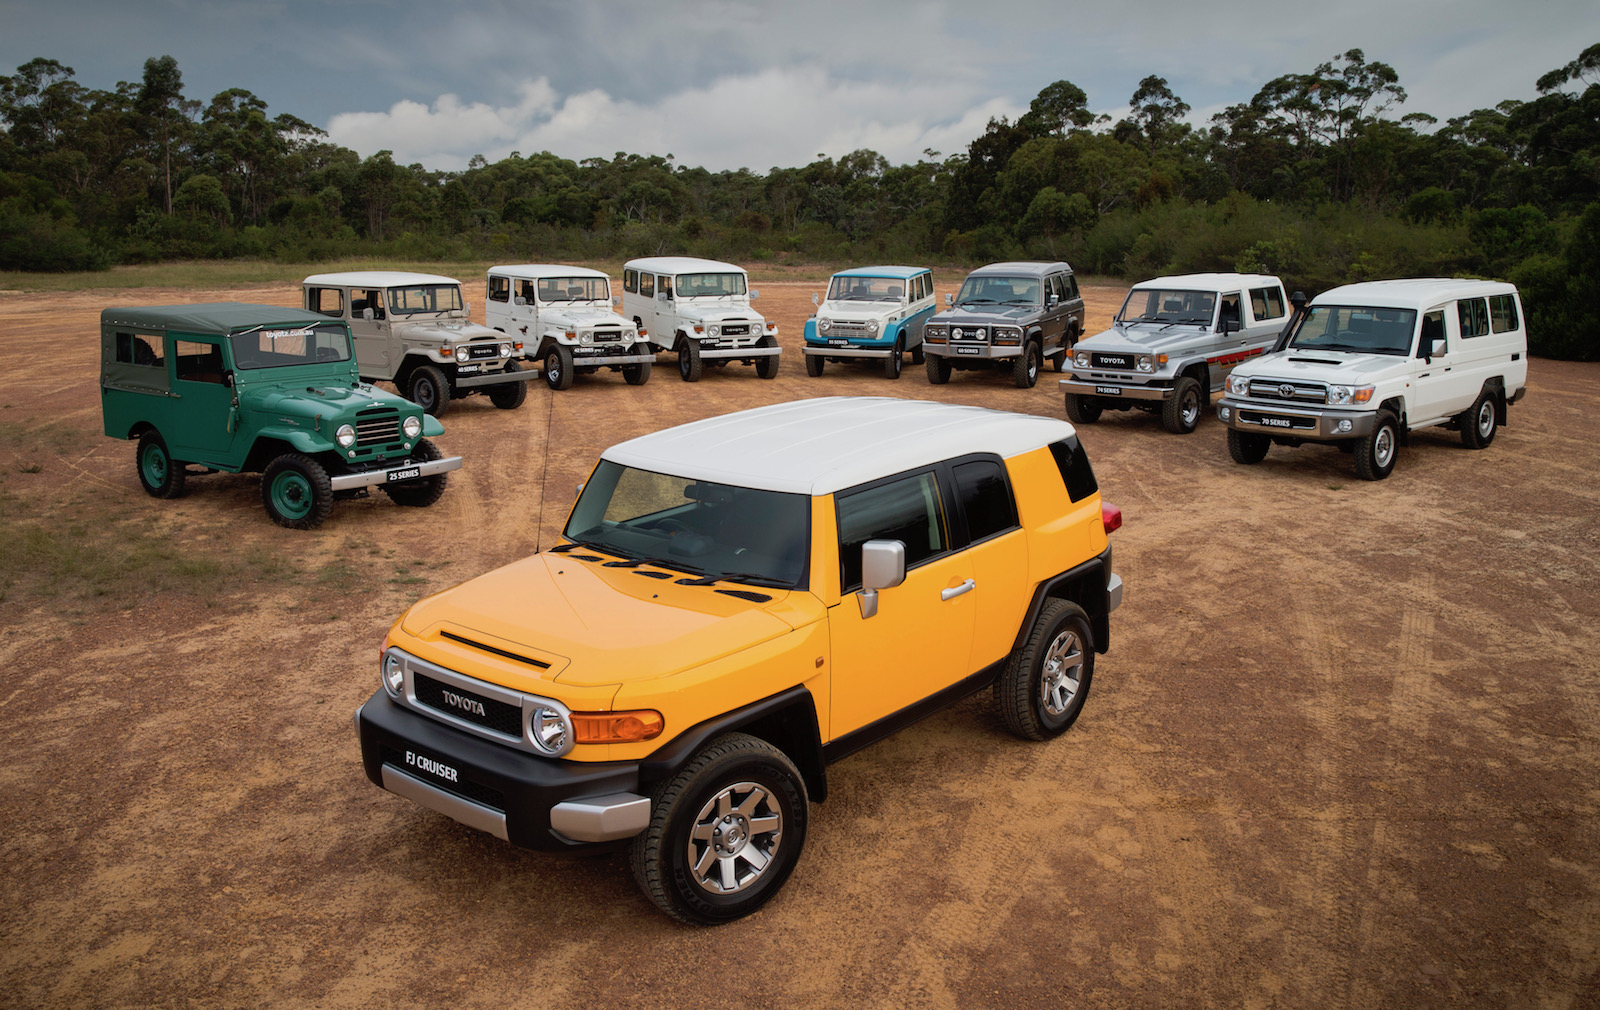 Toyota LandCruiser global sales surpass 10 million, Australia #1